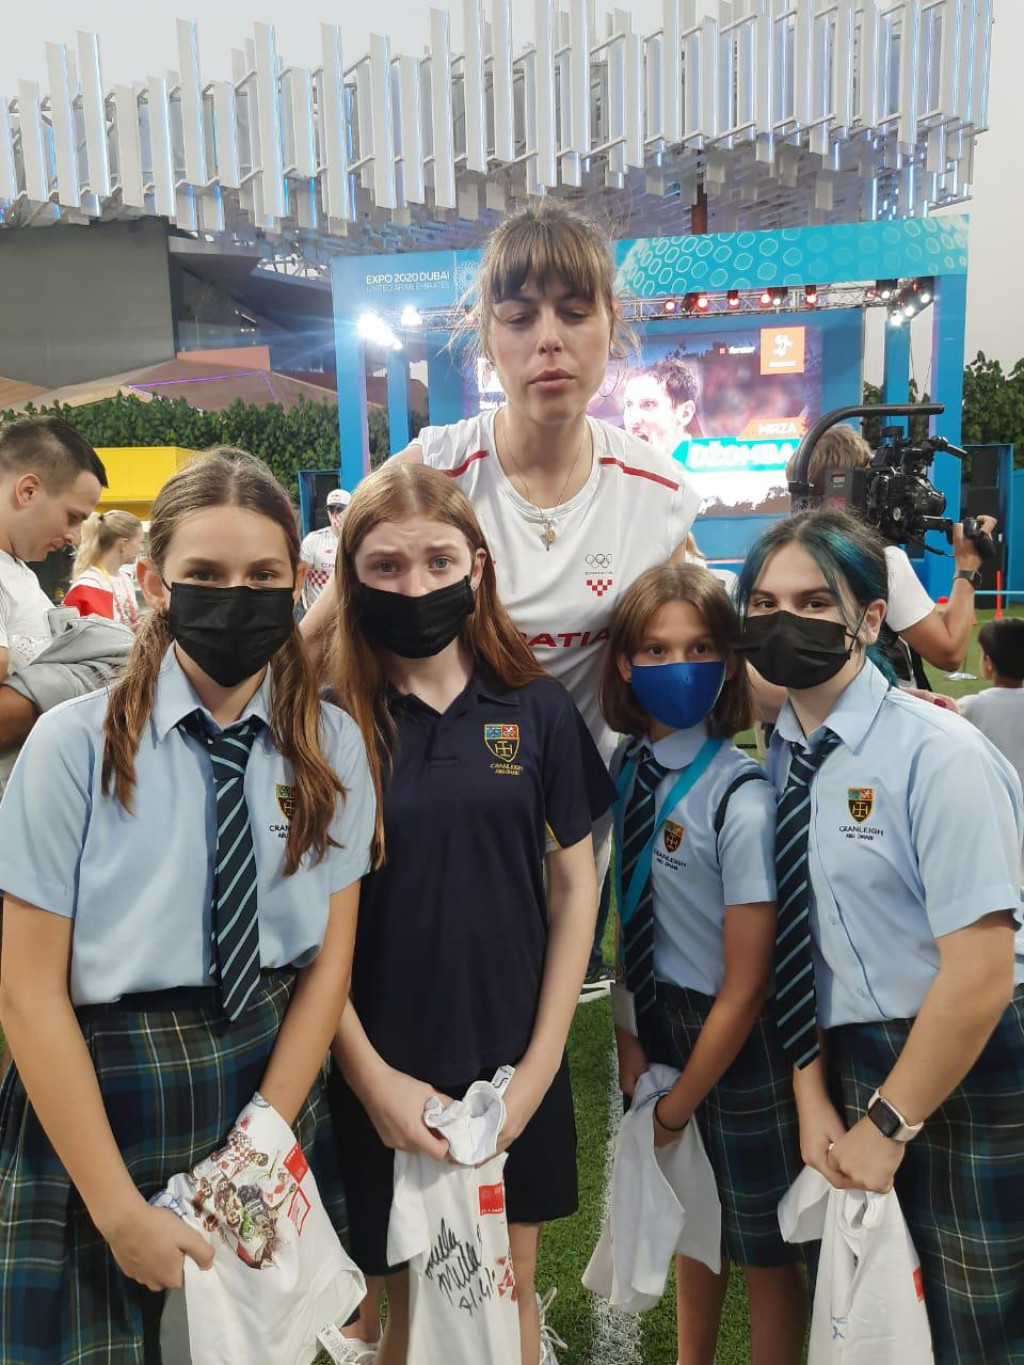 Mlade Zadranke u društvu hrvatskih sportskih zvijezda na izložbi Expo u Dubaiju